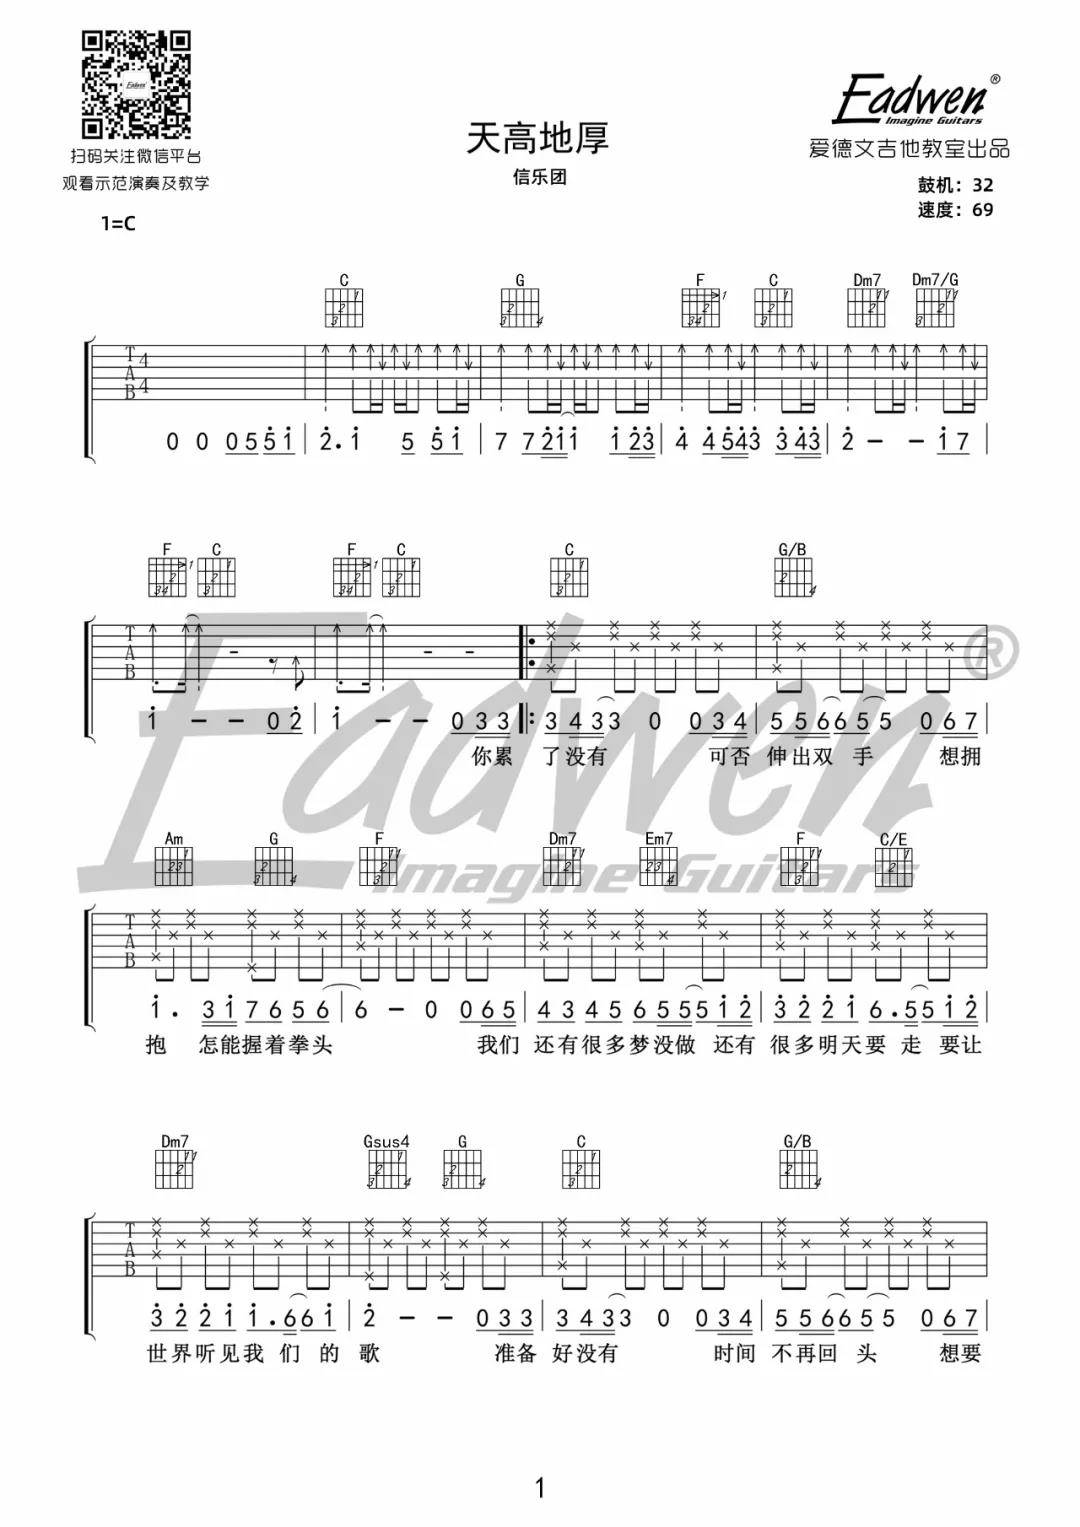 信乐团《天高地厚》吉他谱(C调)-Guitar Music Score